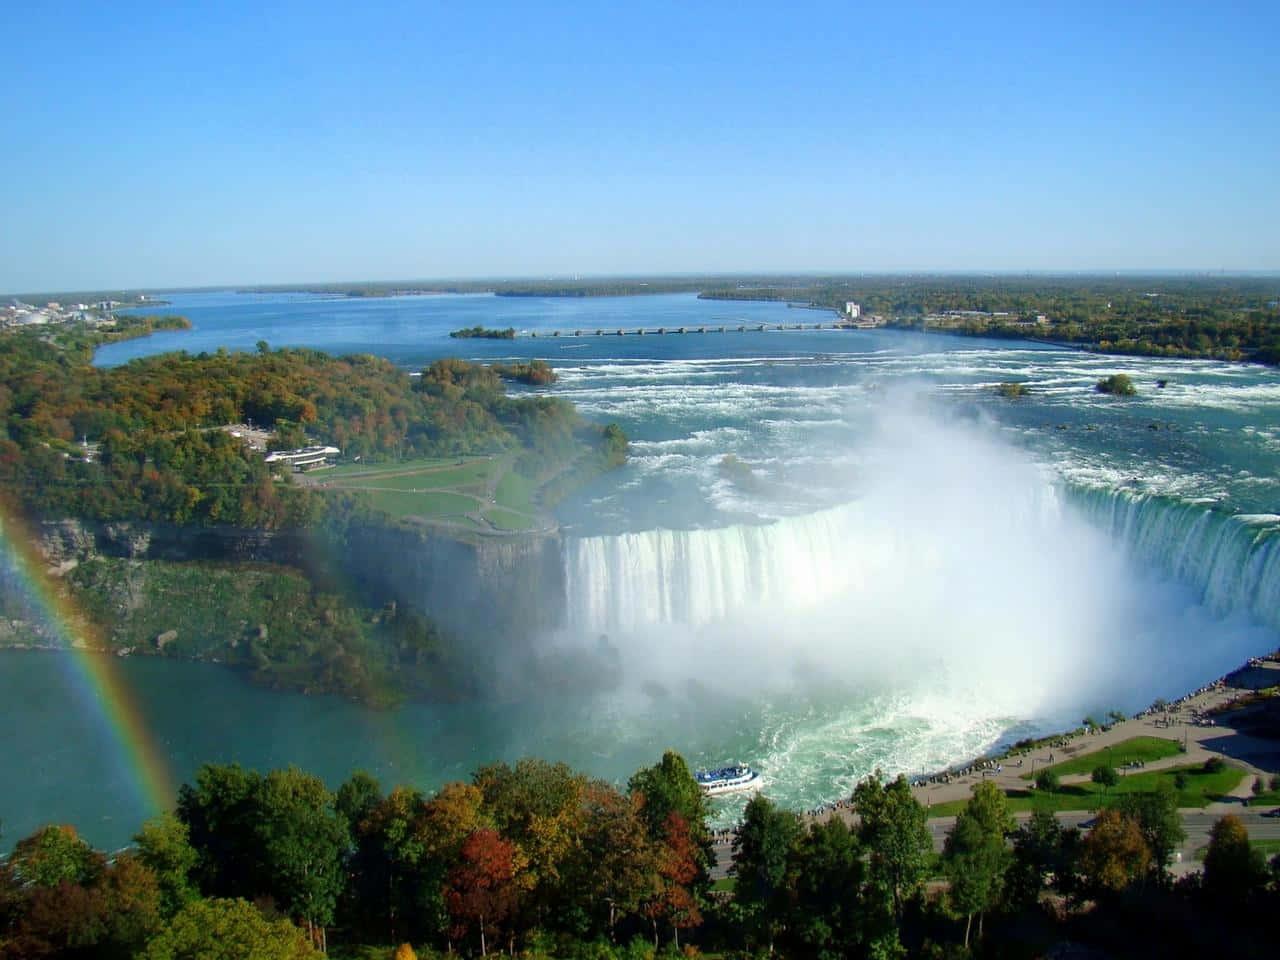 Nyd skønheden og det afslappende miljø ved den majestætiske 720p Niagara Falls.